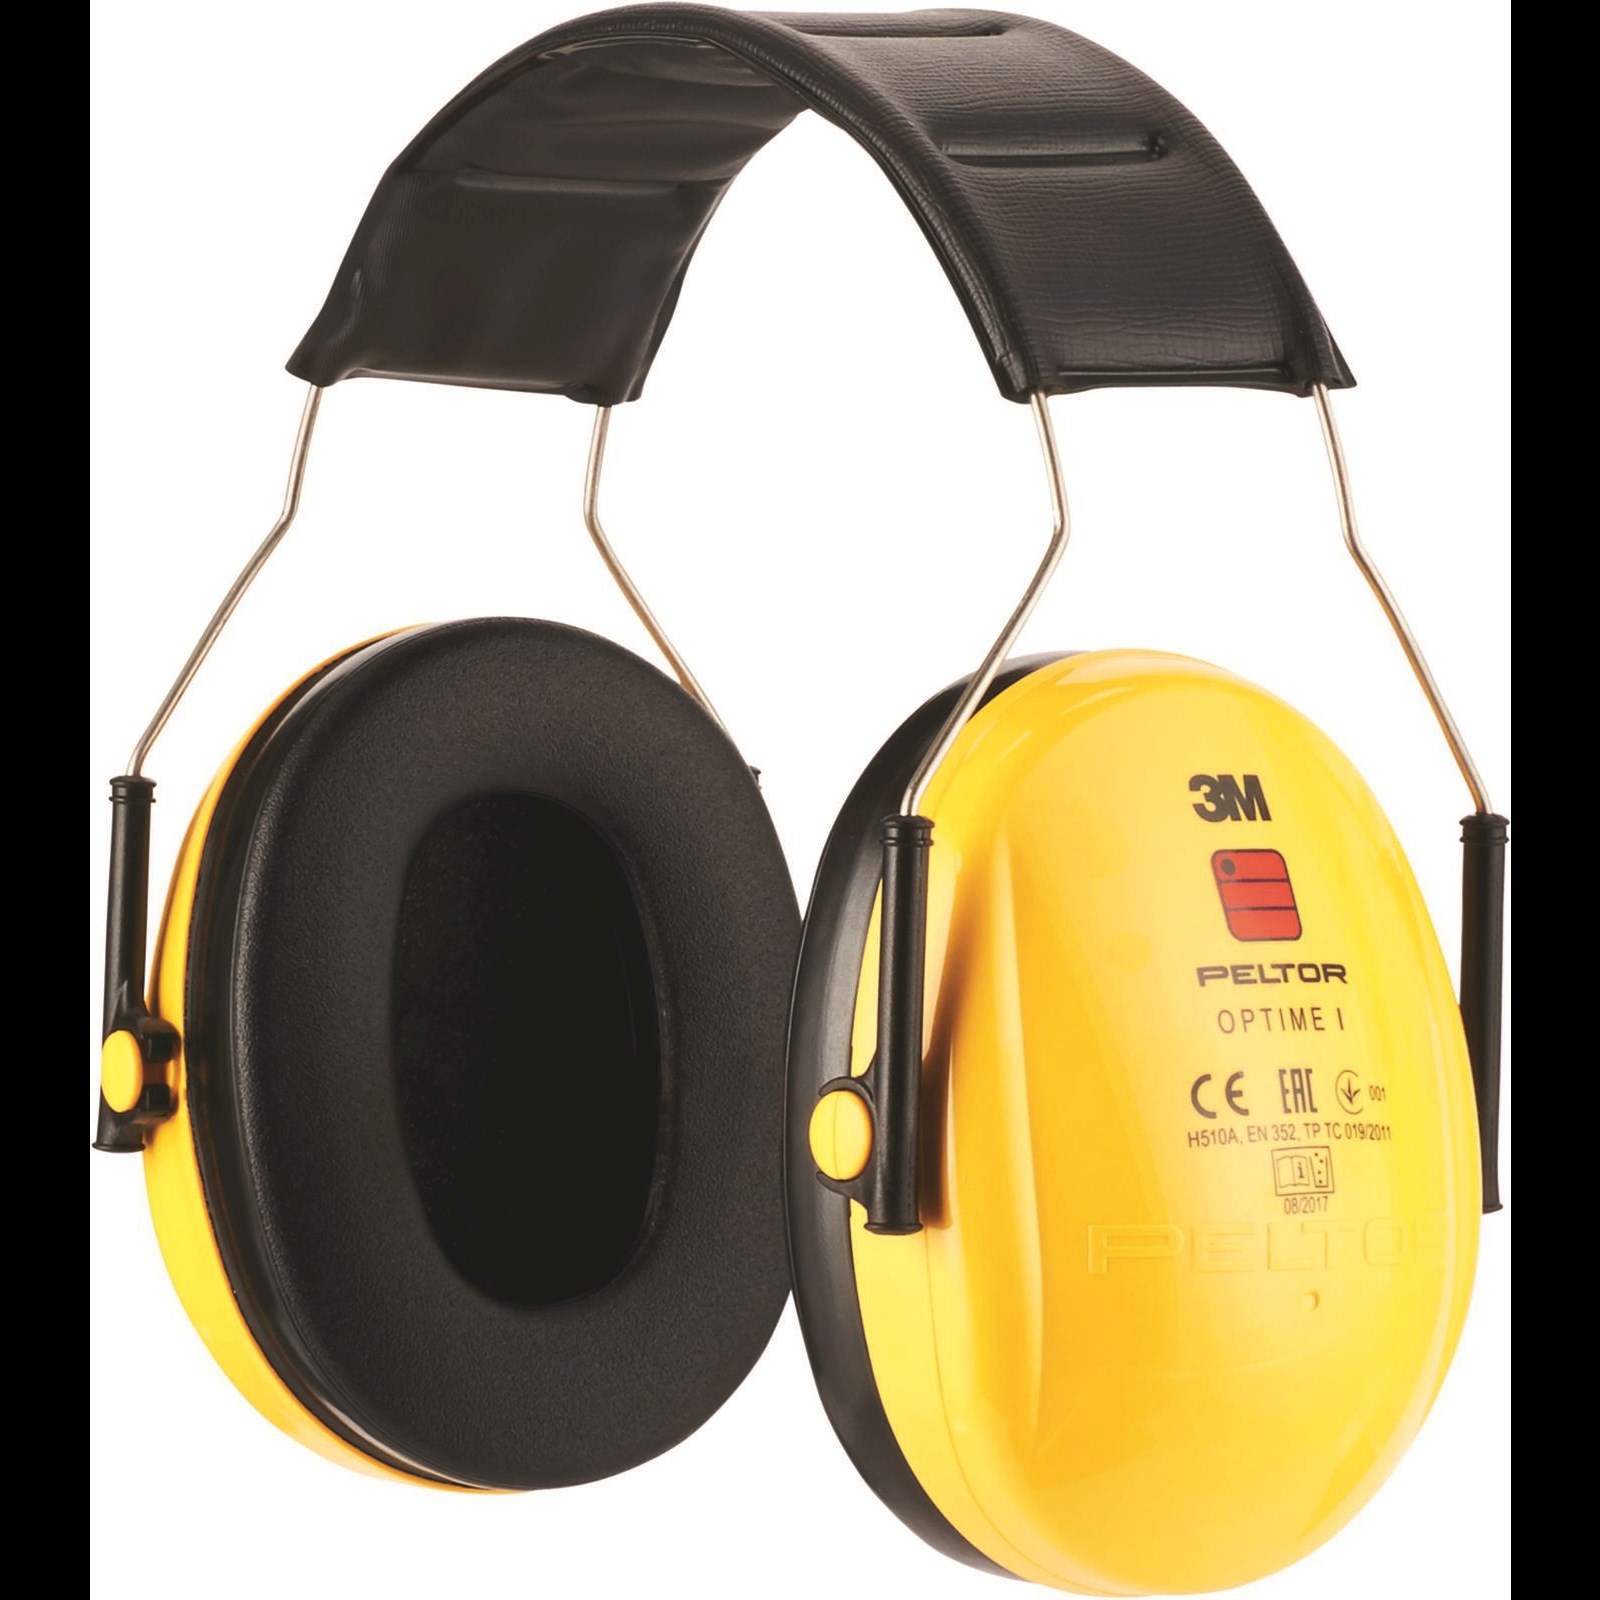 Les équipements de protection anti-bruits – FIP Center le blog